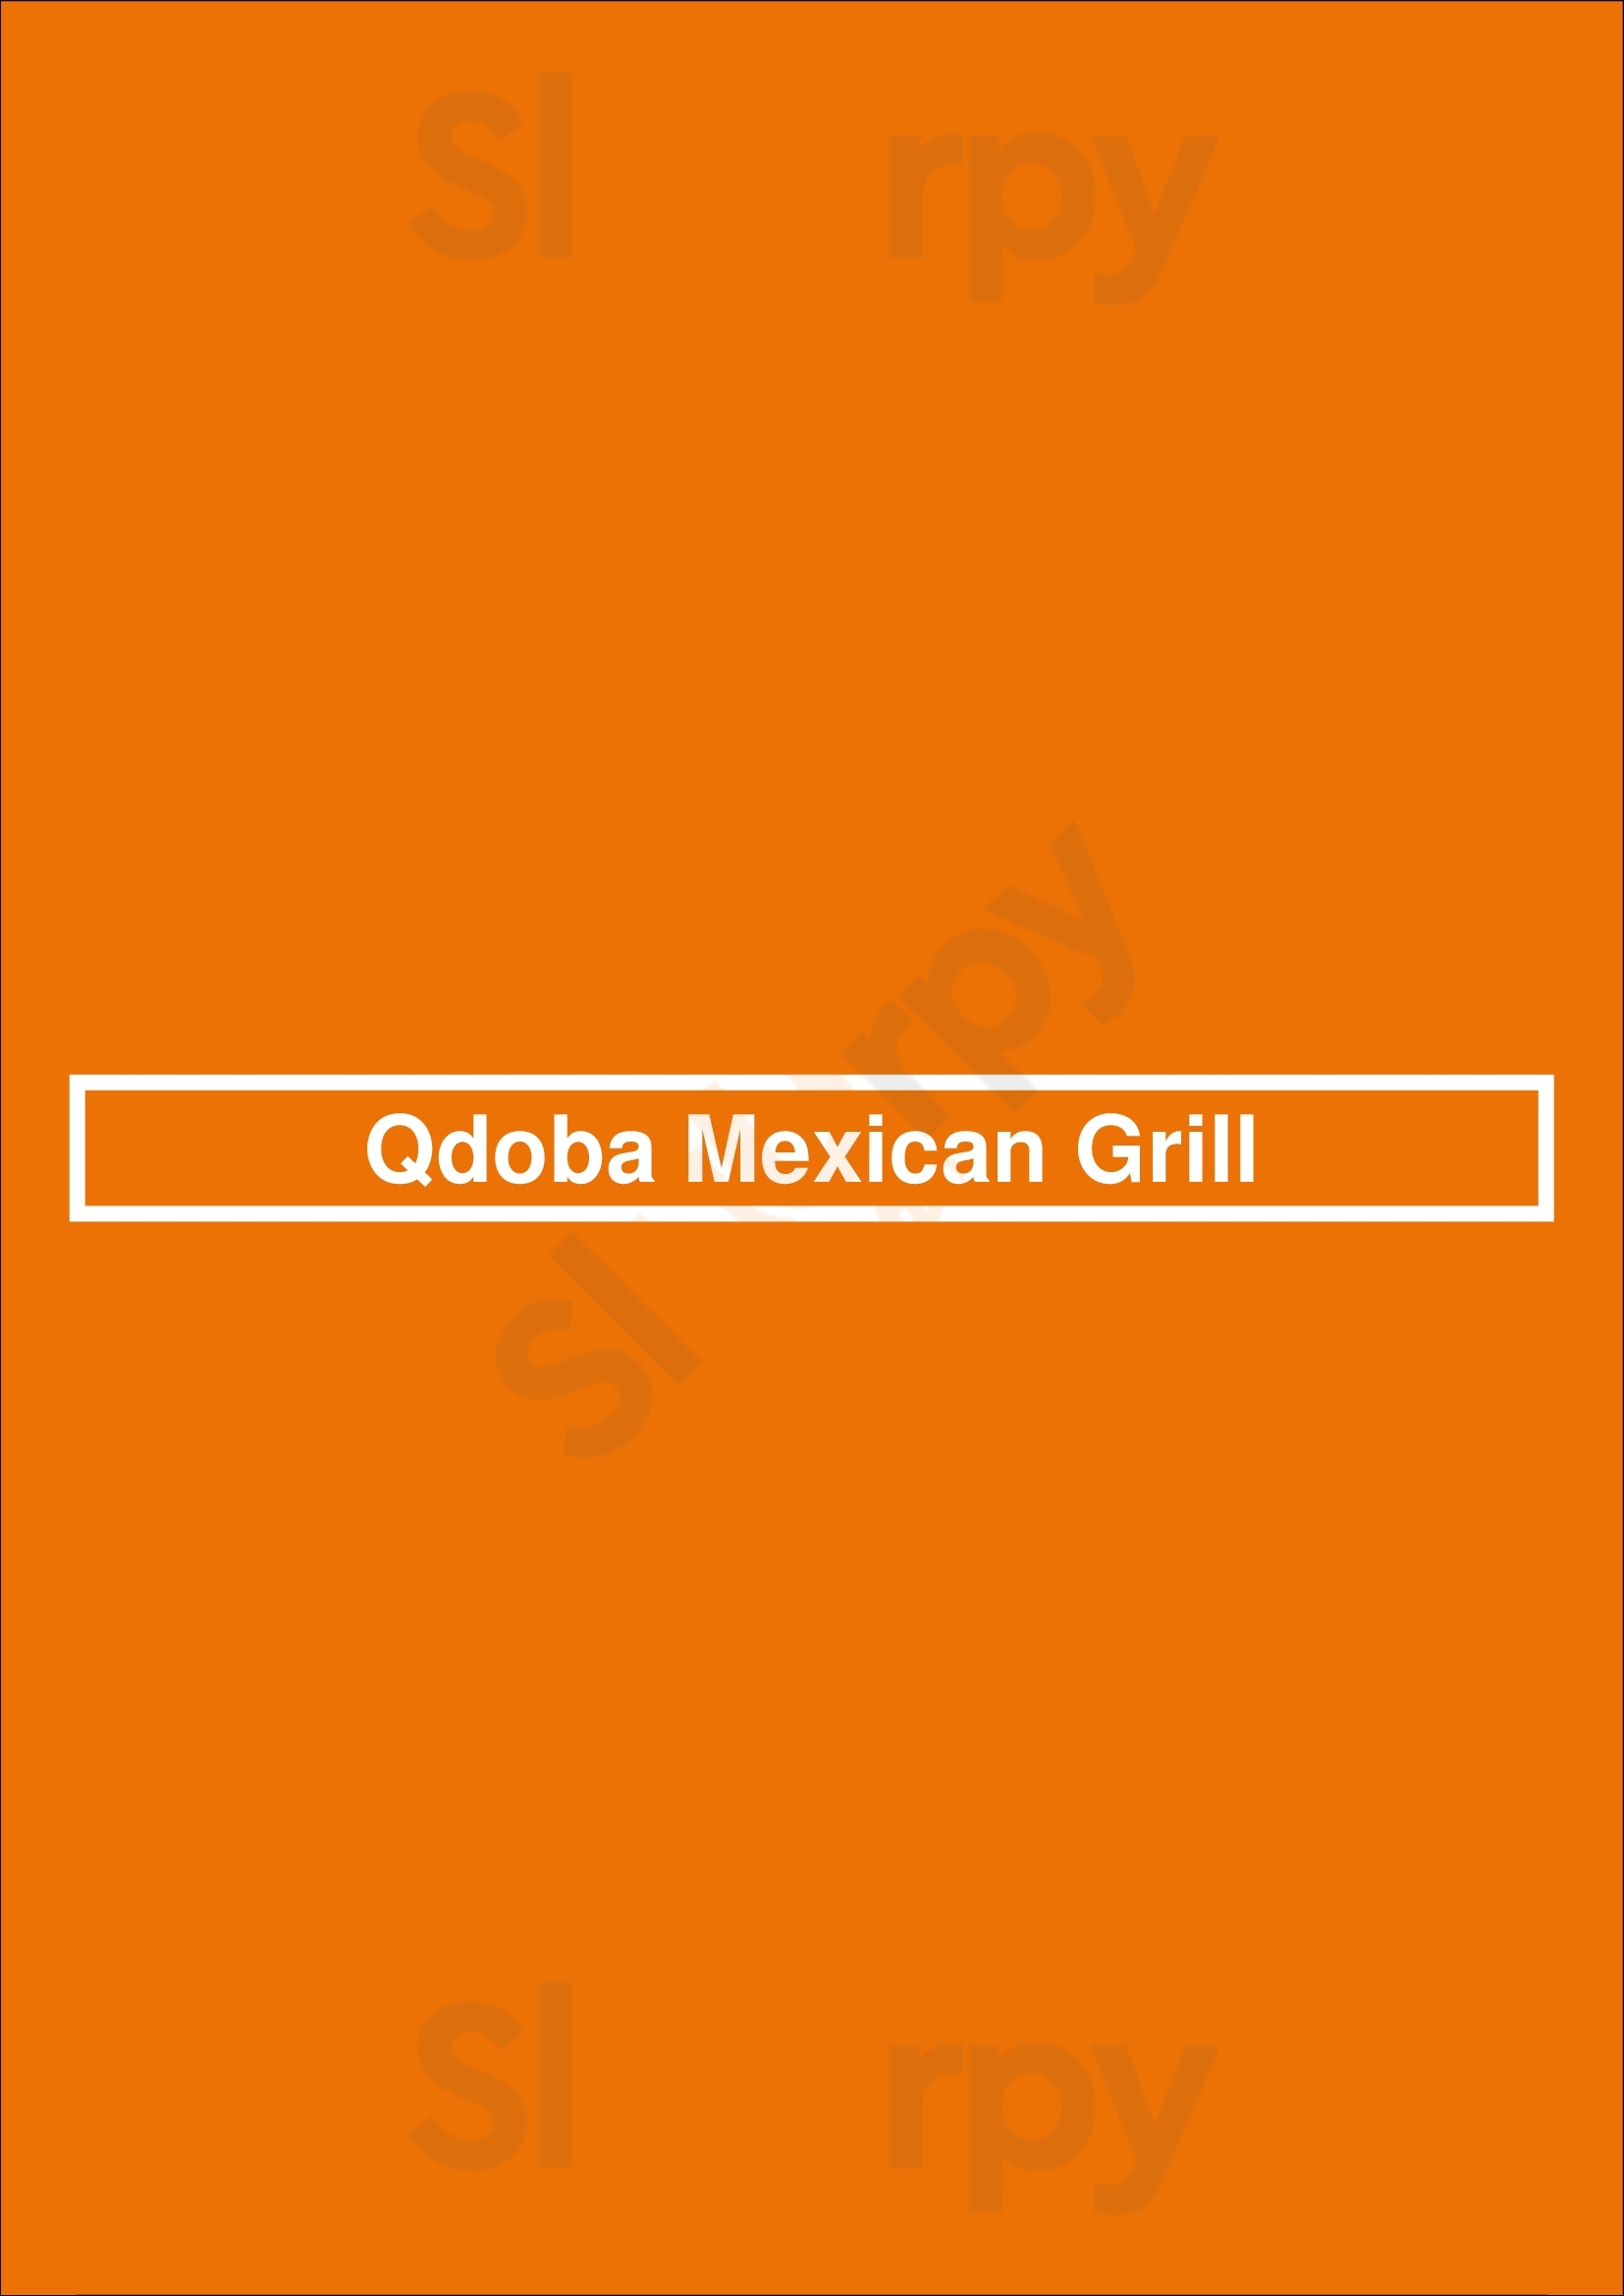 Qdoba Mexican Grill Los Angeles Menu - 1